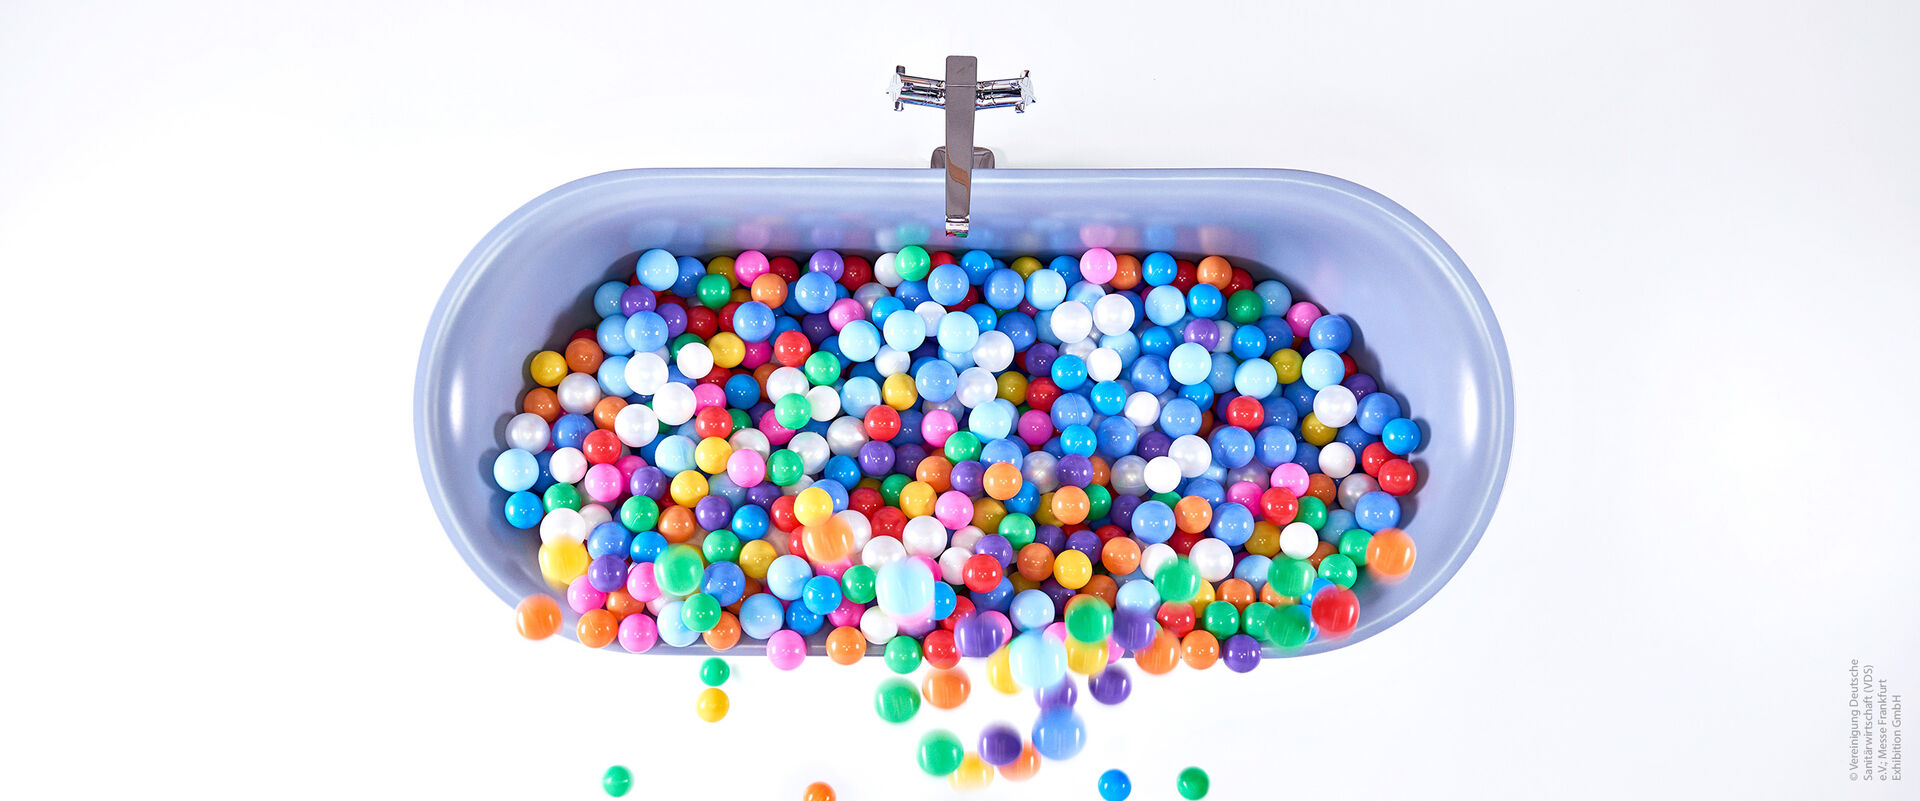 Bunte Kugeln liegen in einer Badewanne in blauer Farbe.